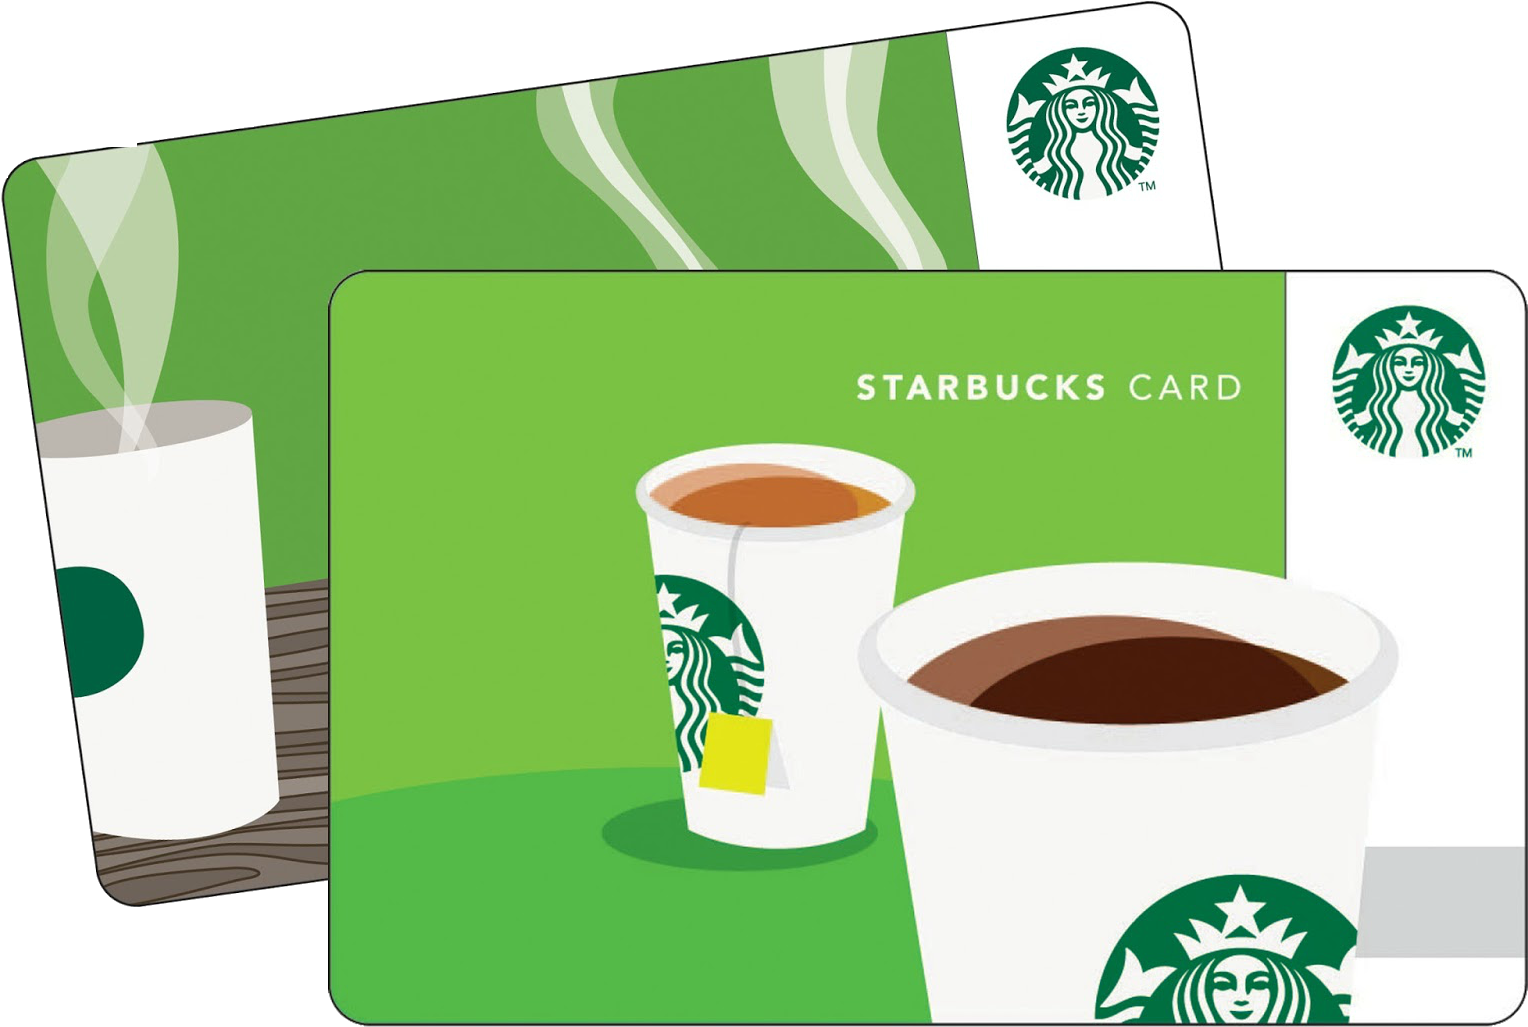 *hot* Free $10 Gift Card For Starbucks, Walmart, Target - Starbucks Gift Card - Value (1600x1100)